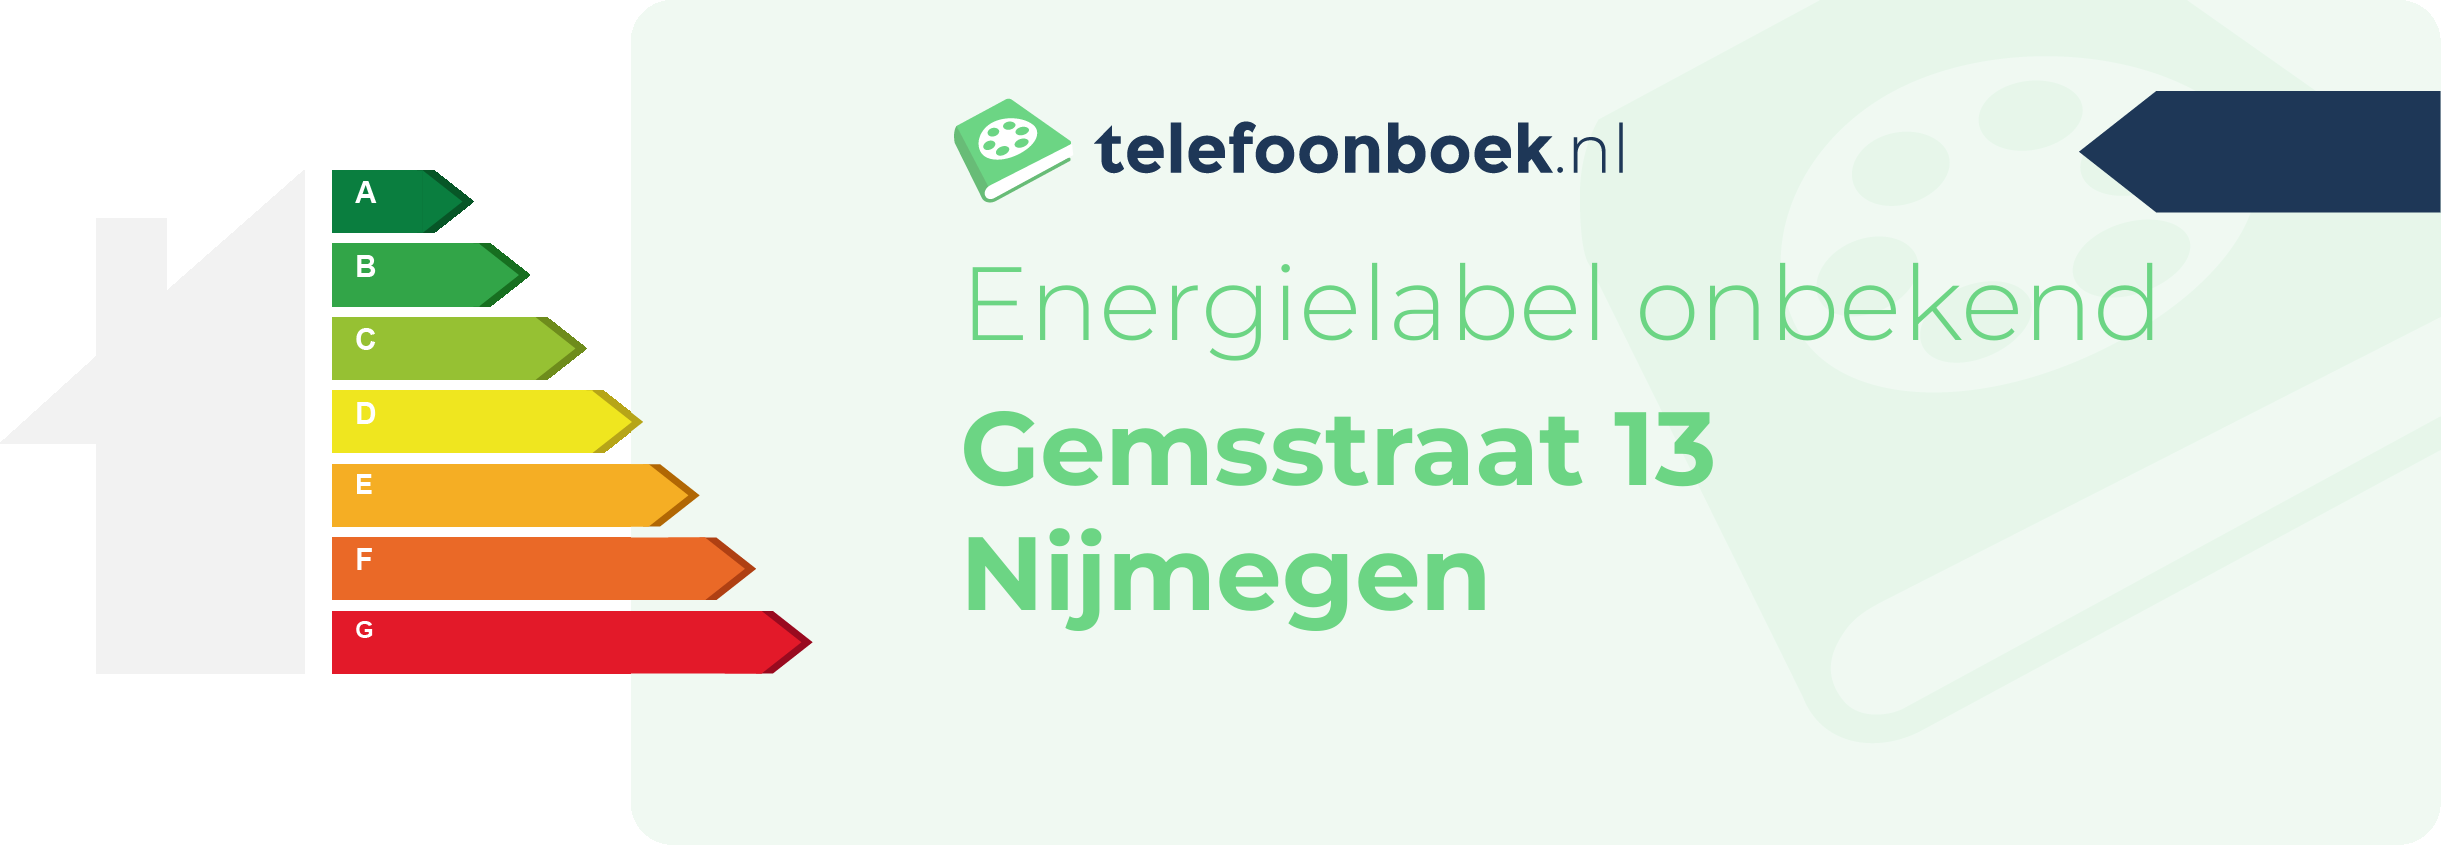 Energielabel Gemsstraat 13 Nijmegen